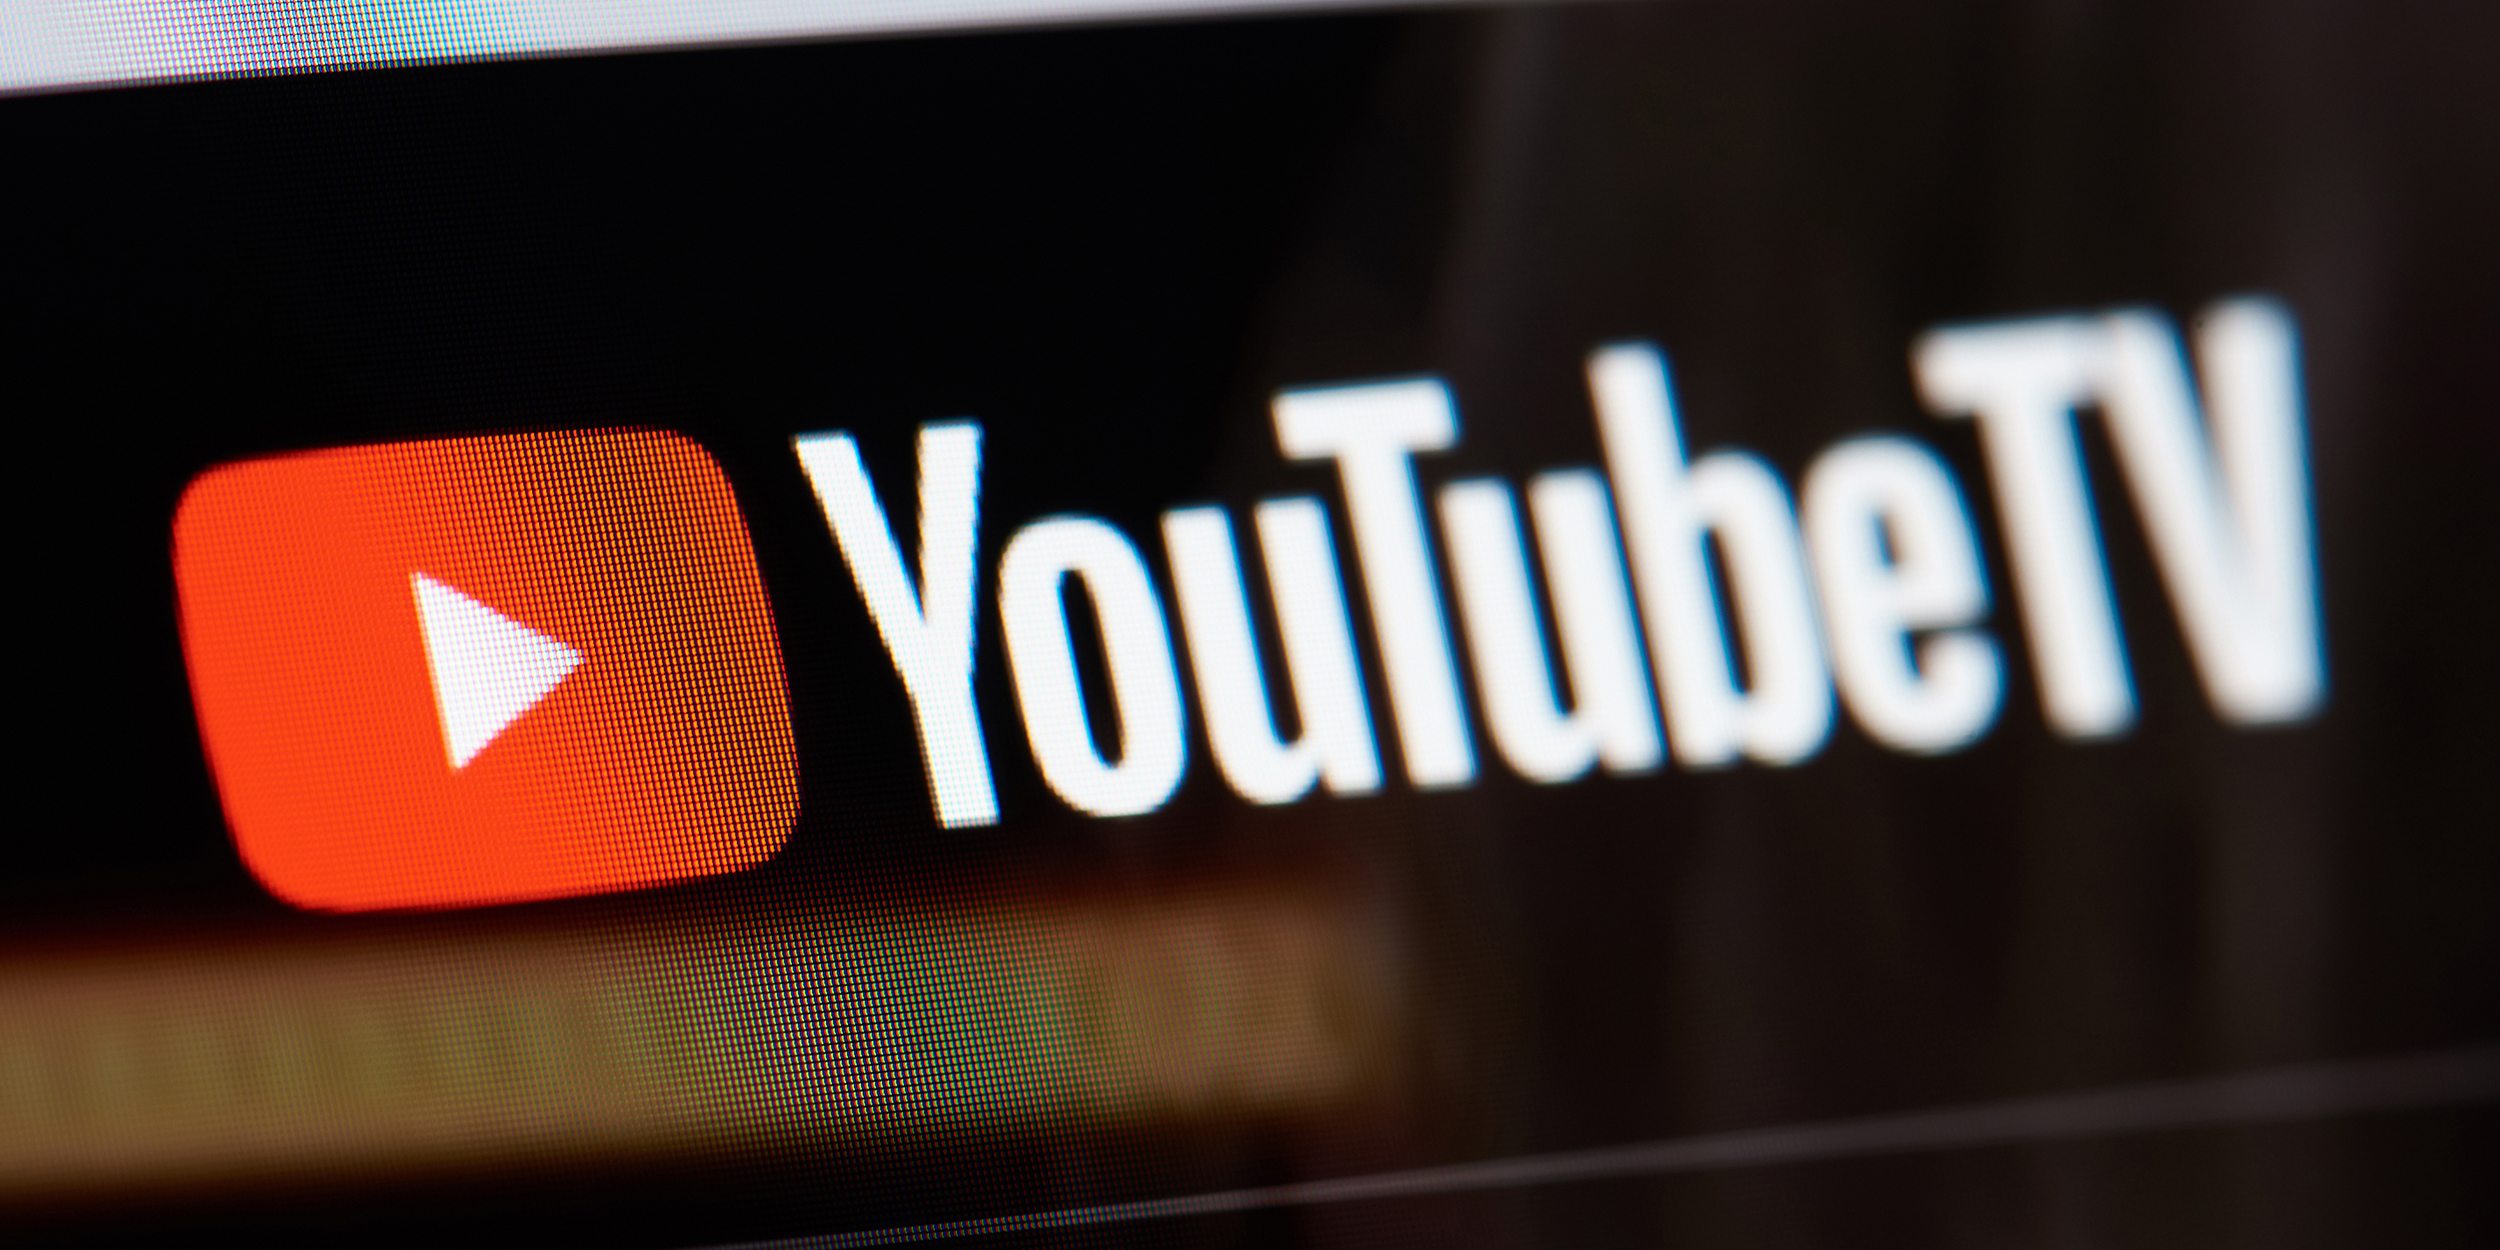 С 1 июня текущего года YouTube начнет добавлять рекламу во все видео, опубликованные на платформе